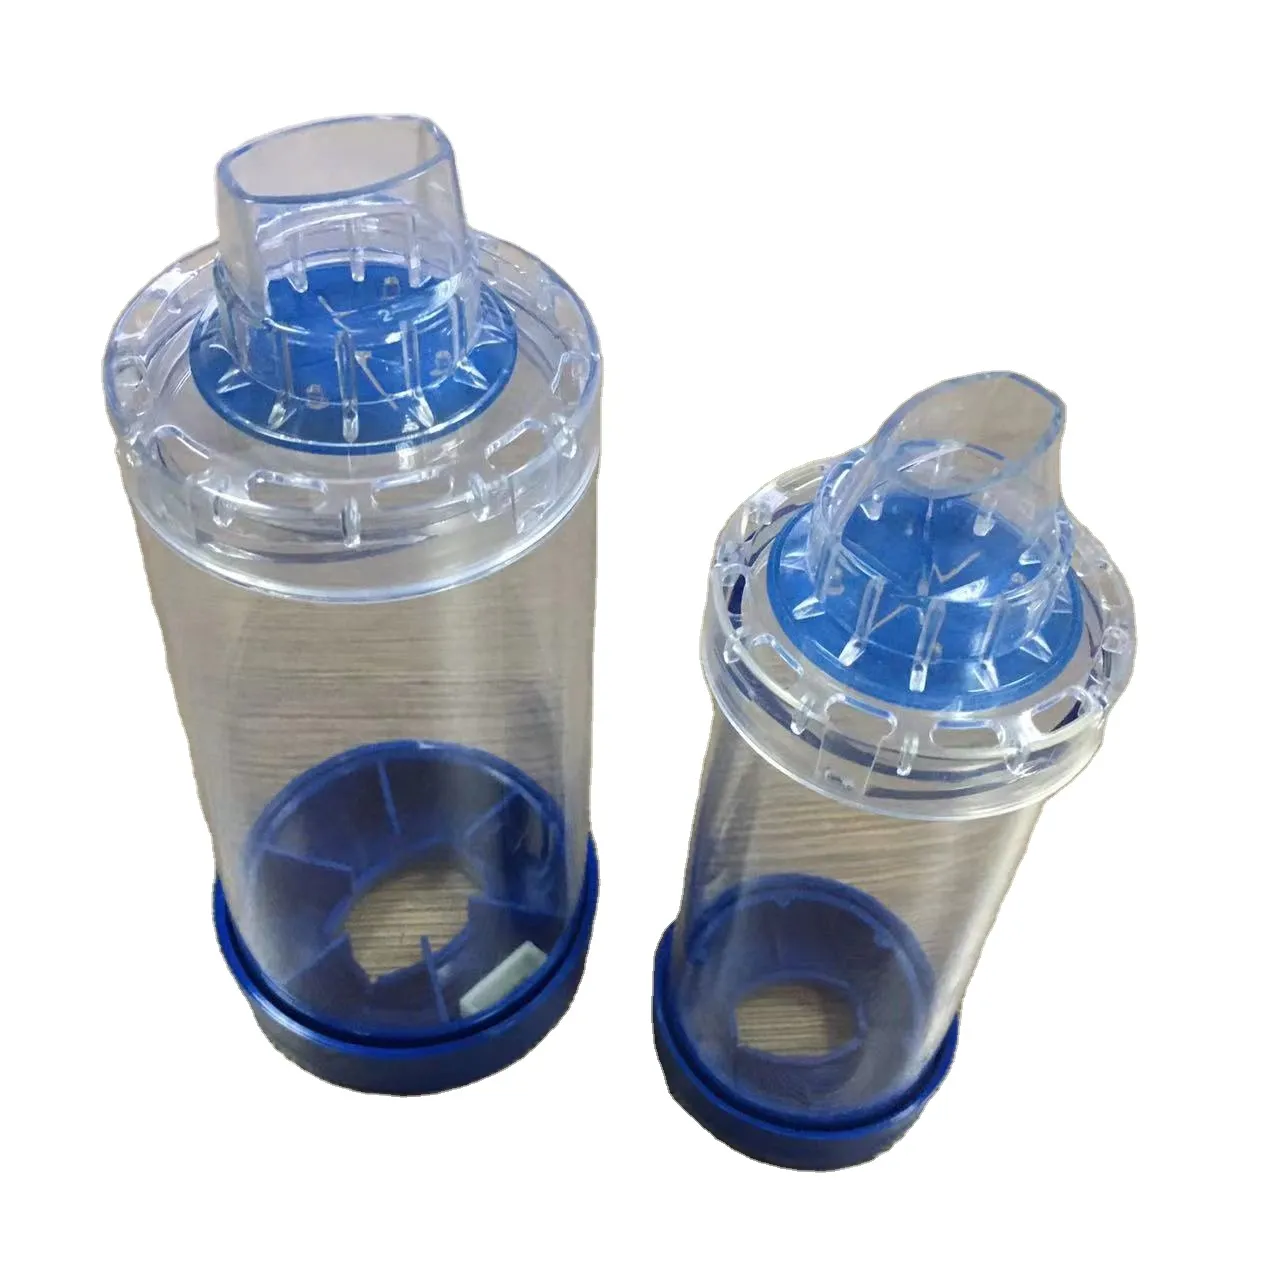 Medizinische Aero-Kammer mit zwei Ventilen und Luftkammer-Inhalator mit Silikon abdeckung für die Atemtherapie MDI-Abstands halter für Asthma